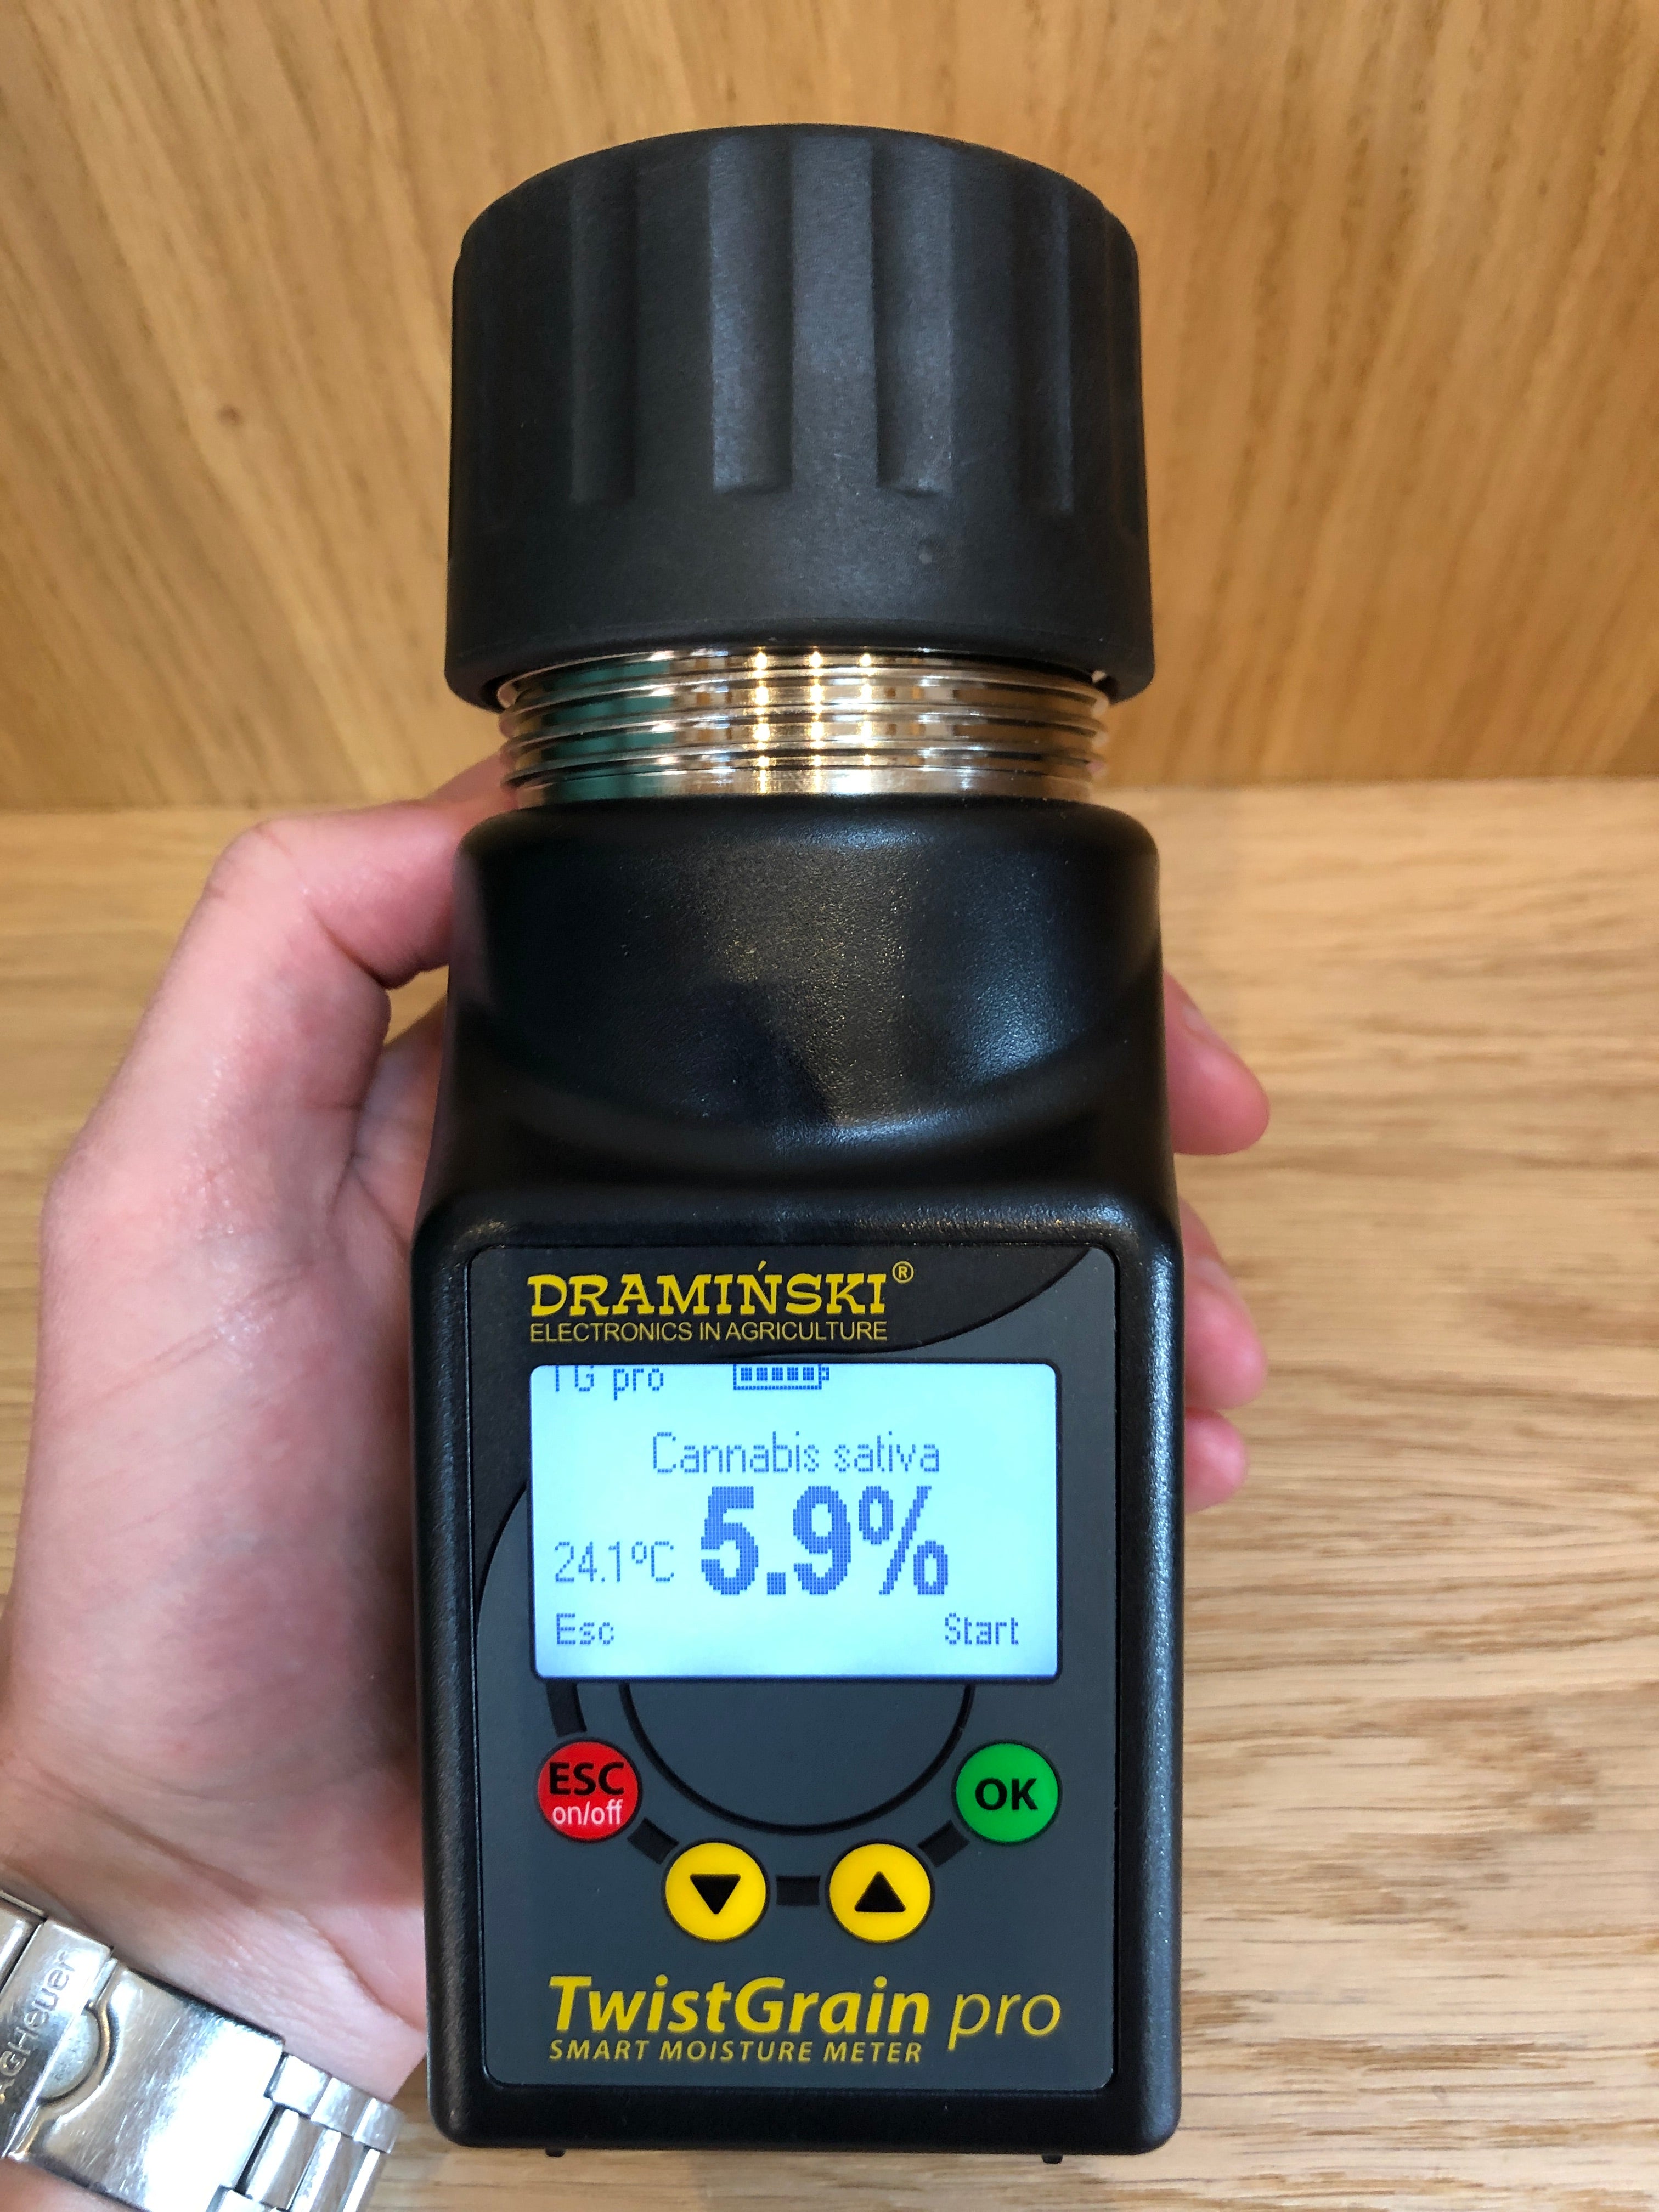 DRAMINSKI moisture meter used to test the hemp seed